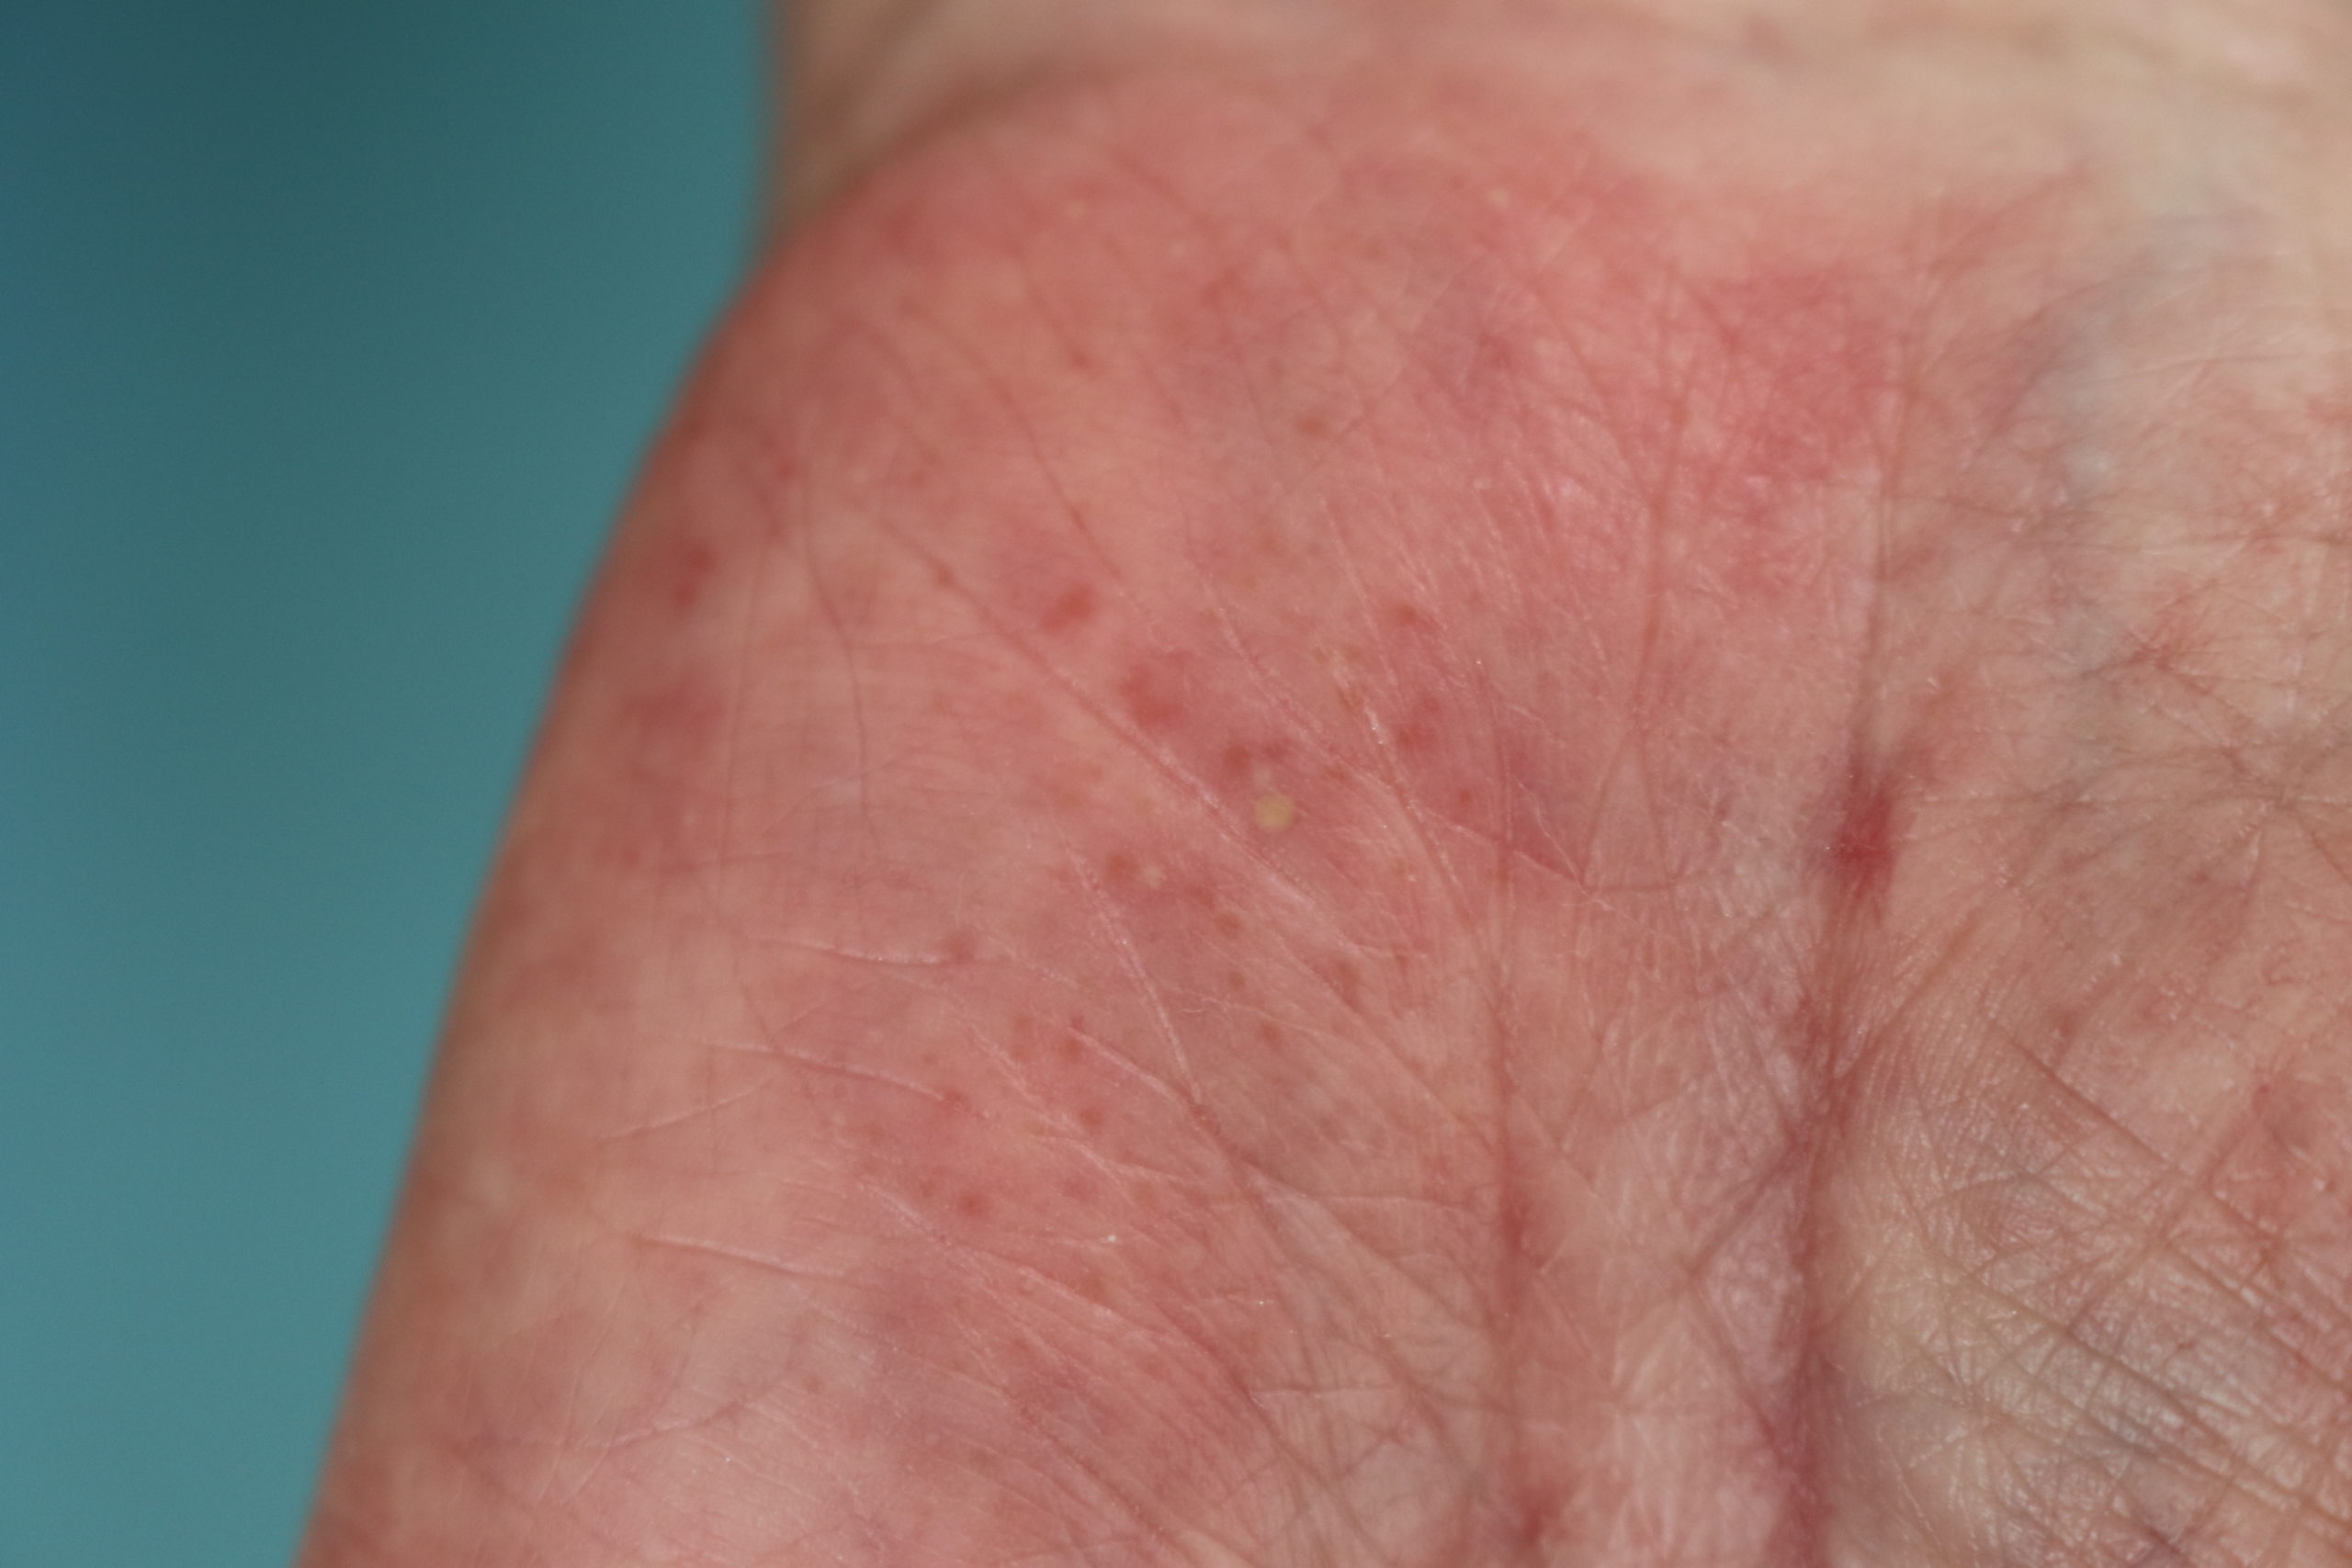 掌蹠膿疱症 しょうせきのうほうしょう おおふな皮ふ科の皮膚科診察案内